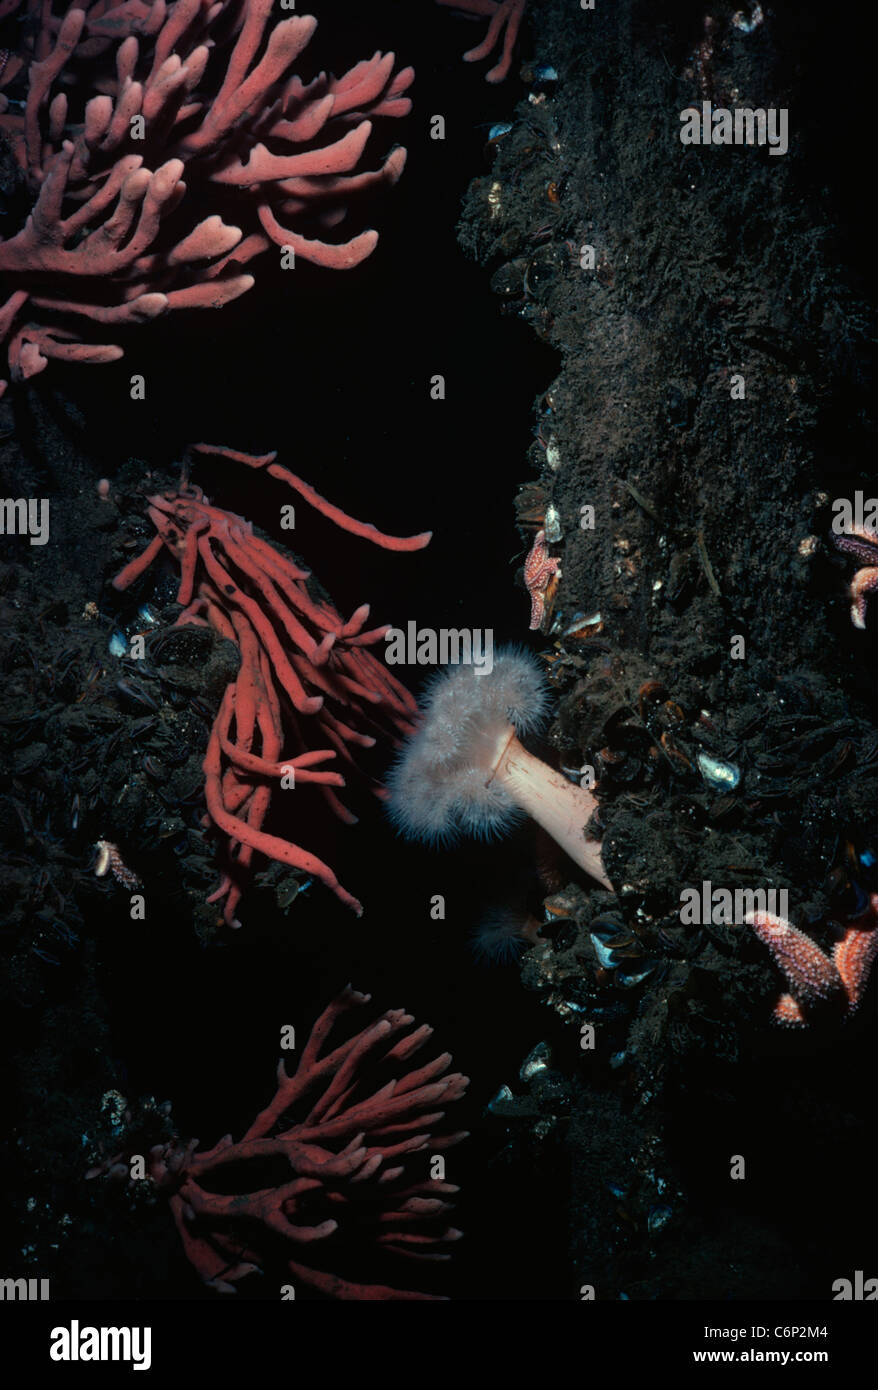 Spugna (Poriferi) e un anemone (Actiniaria) su un impilamento incrostato con cozze (Bivalvia). La Nuova Inghilterra, Oceano Atlantico settentrionale Foto Stock